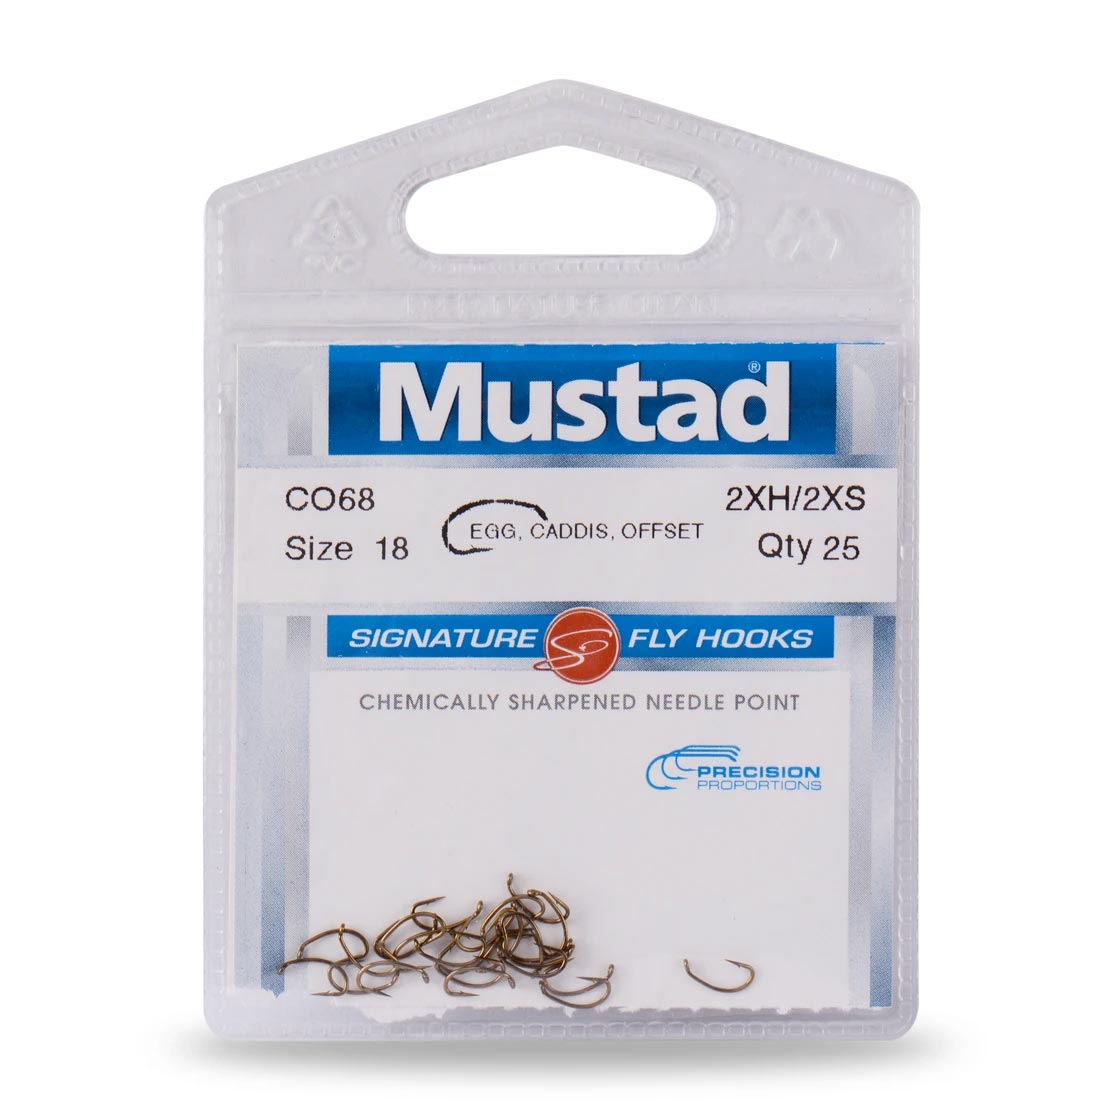 Mustad Signature Fly Hooks Egg Caddis Offset C068 2XH-2XS